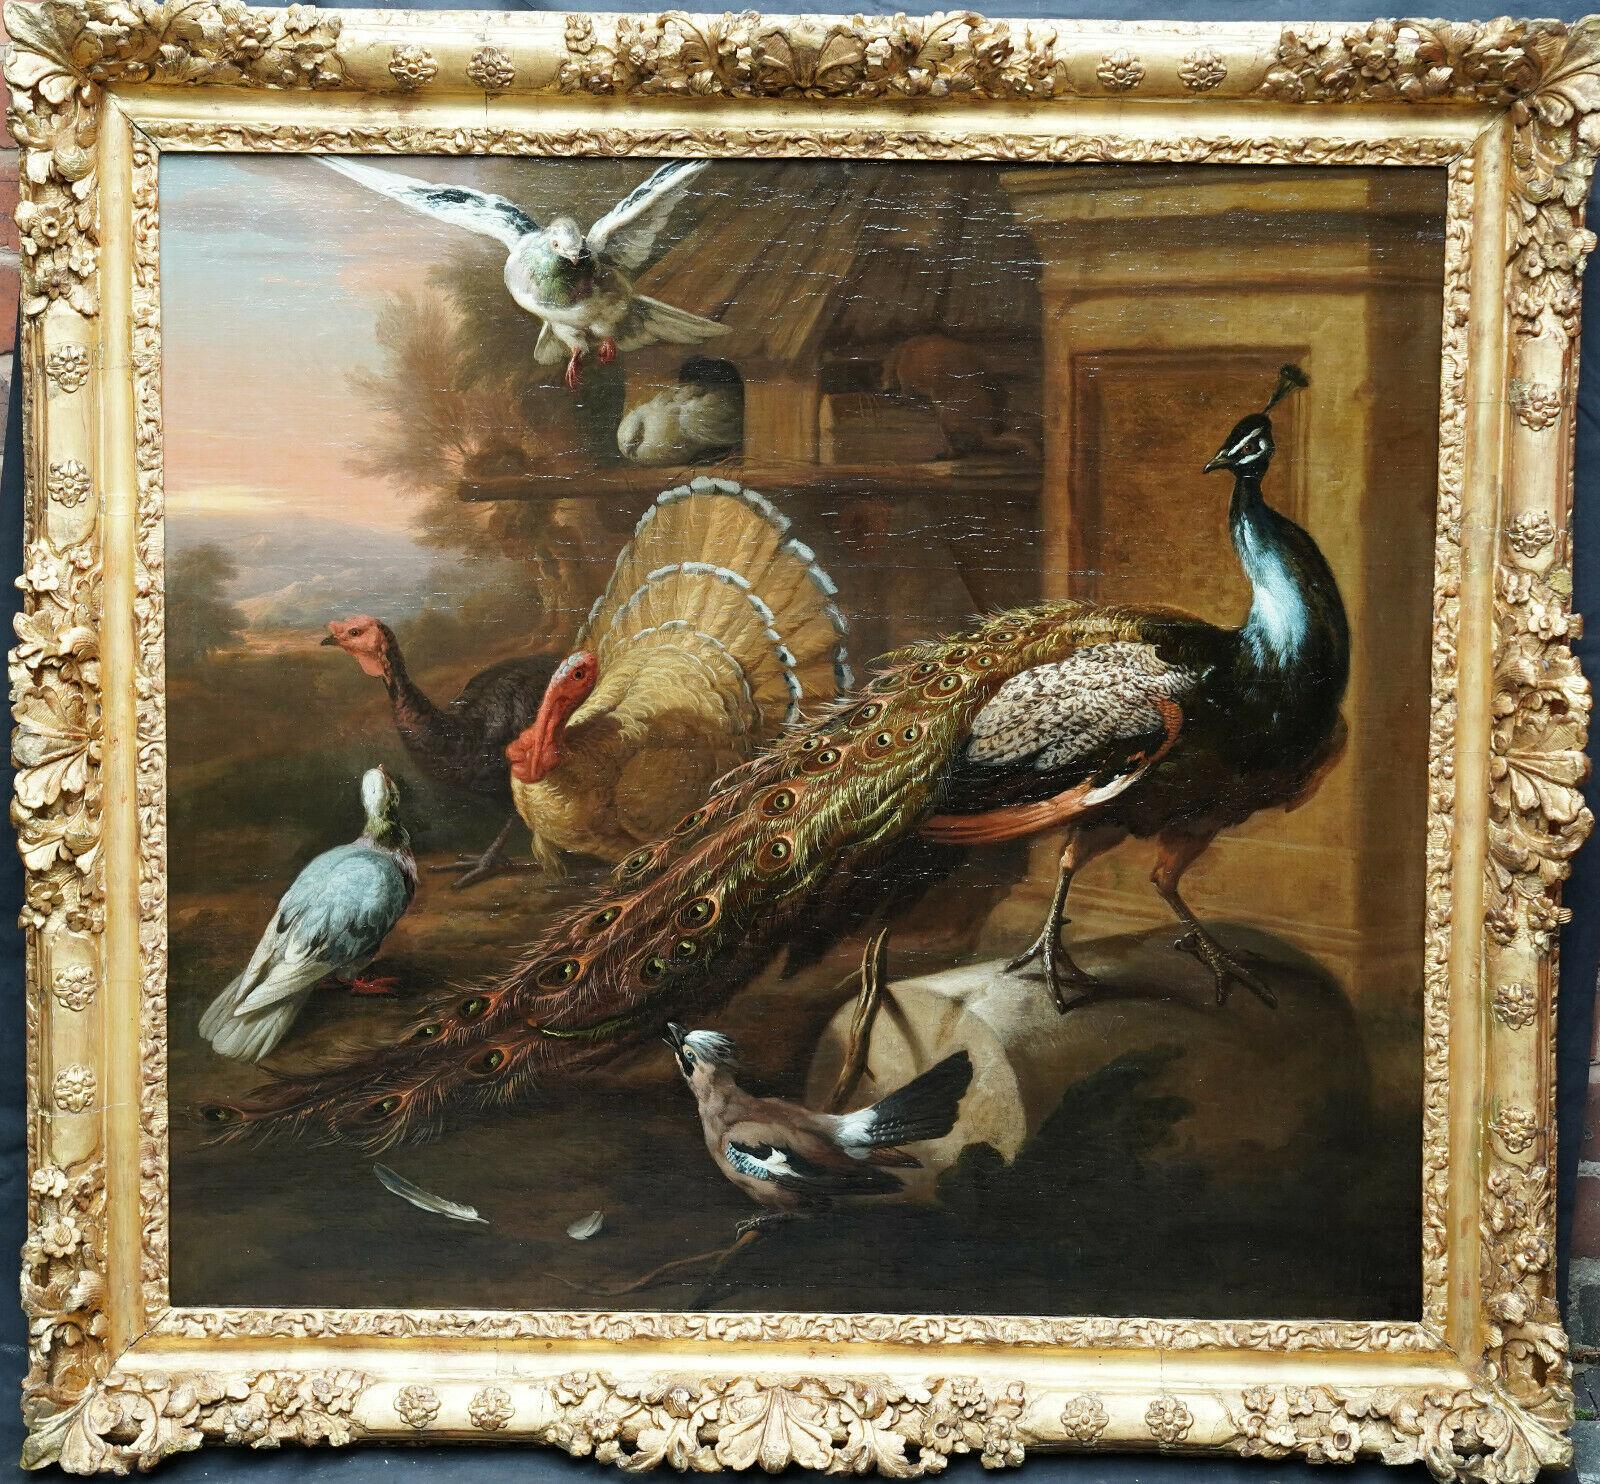 Animal Painting de Marmaduke Cradock - Pavo real y pájaros en un paisaje - Pintura al óleo sobre animales del Viejo Maestro británico del siglo XVII